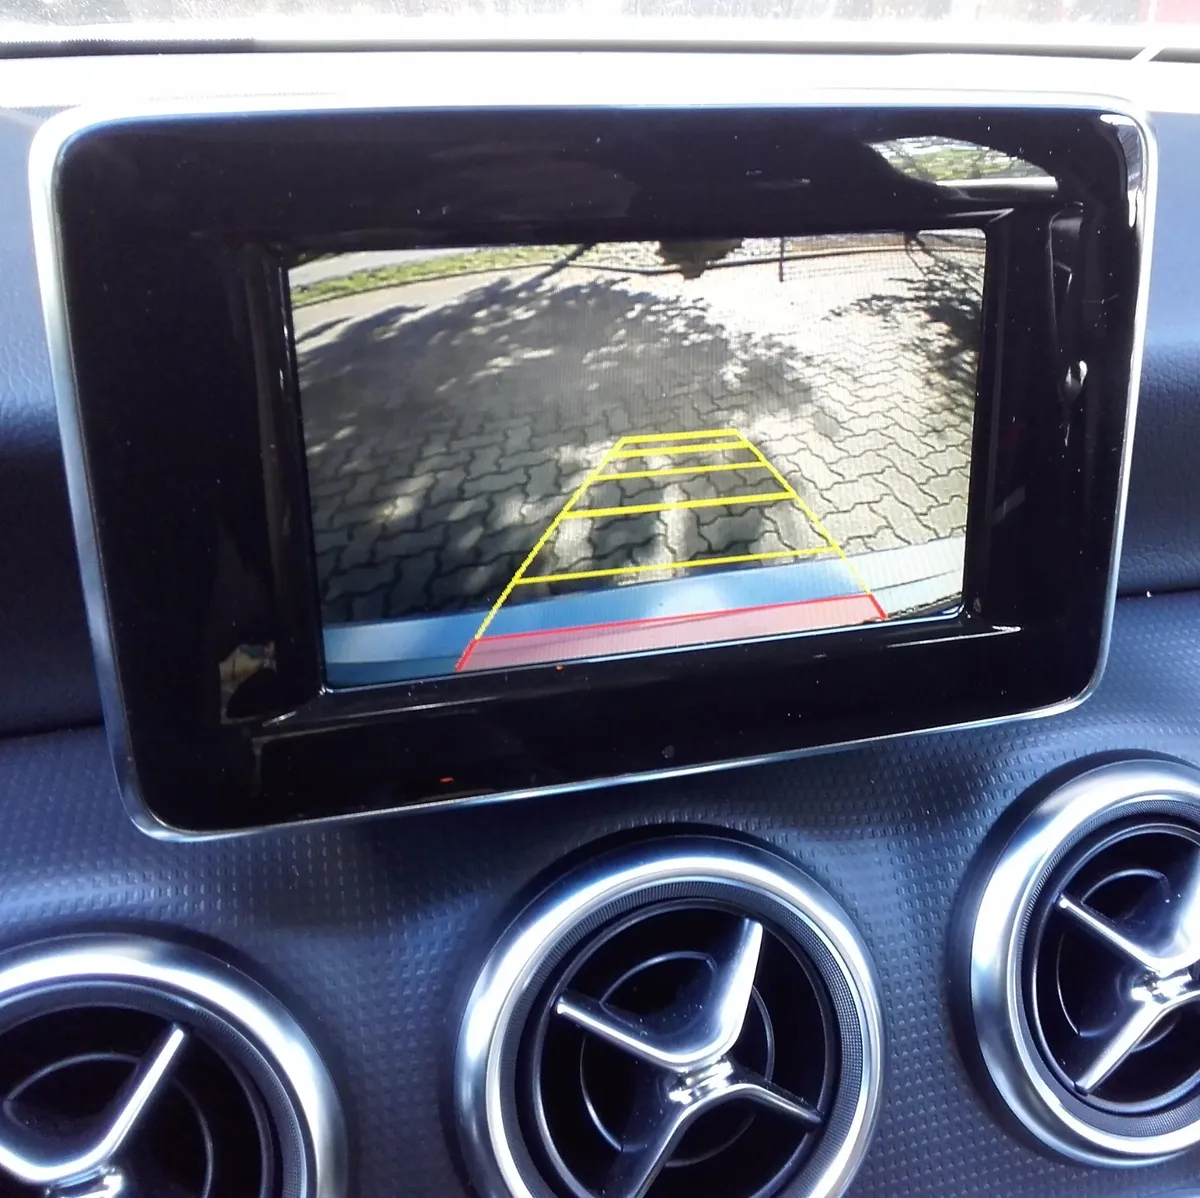 Interface Multimédia vidéo pour caméra compatible Mercedes CLA, GLA et Classe A de 2013 à 2019